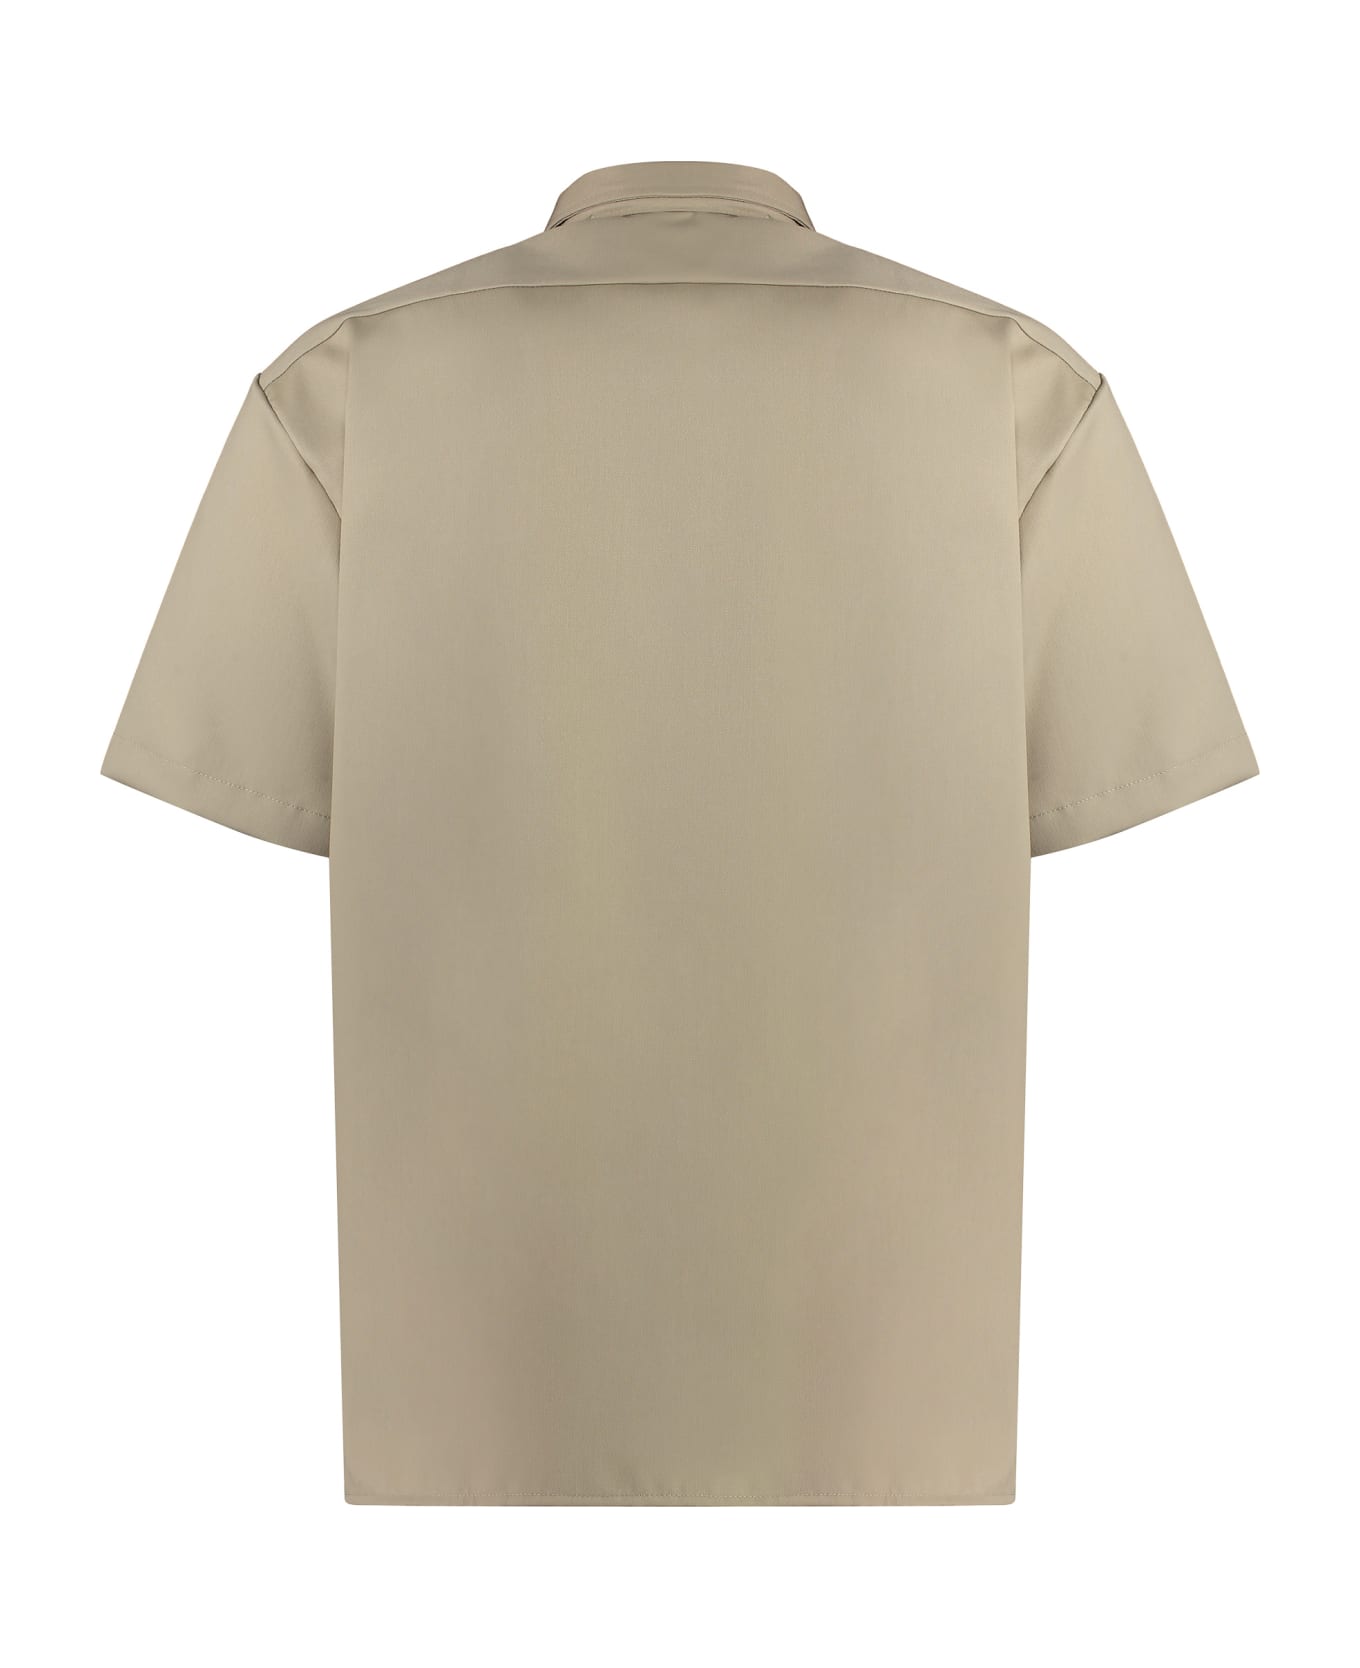 Dickies Short Sleeve Cotton Blend Shirt - Beige シャツ